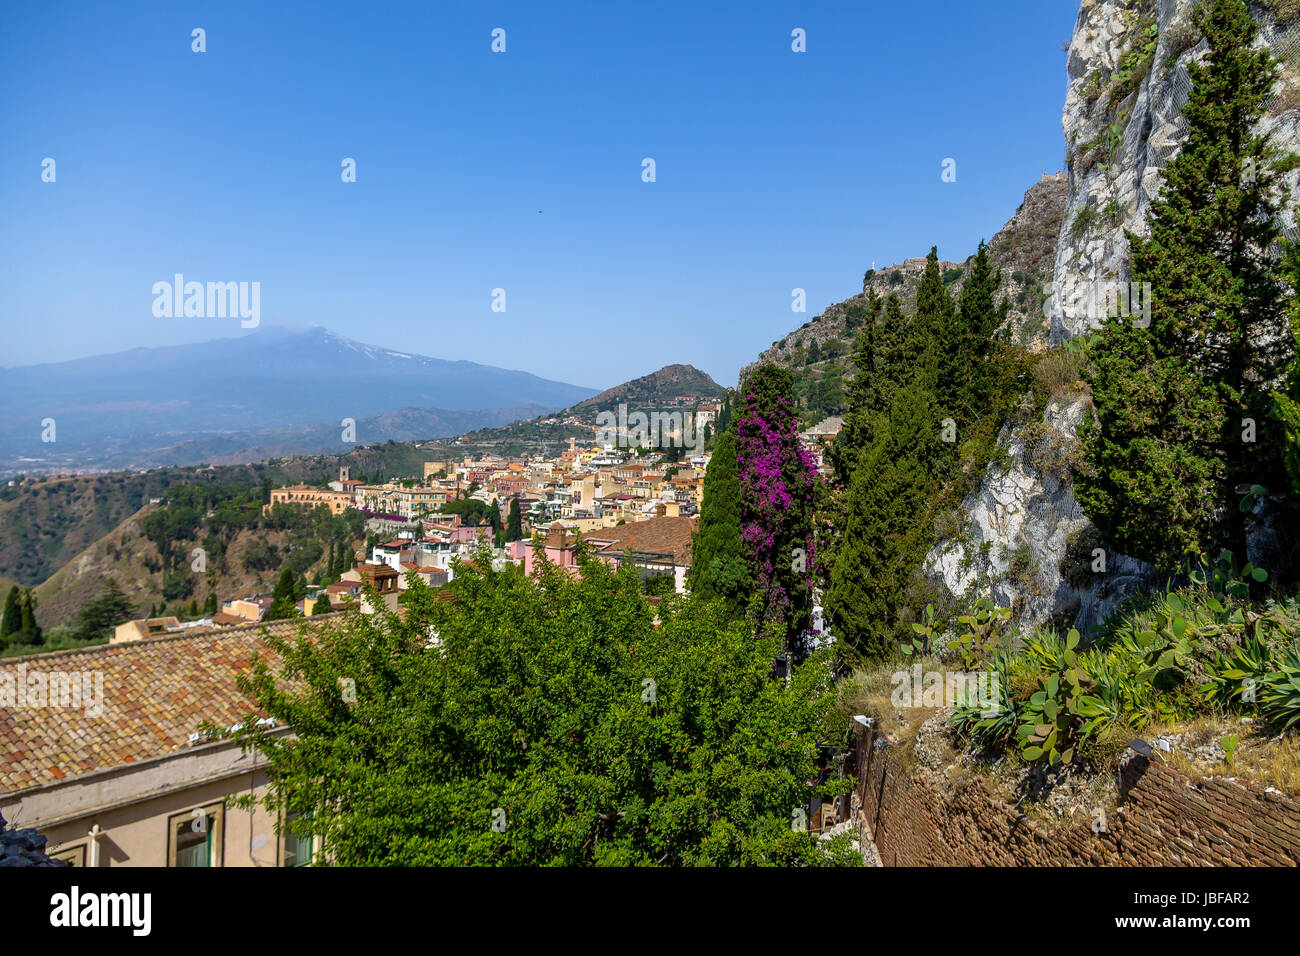 Vue aérienne de la ville de Taormine et l'Etna Volcano - Taormina, Sicile, Italie Banque D'Images